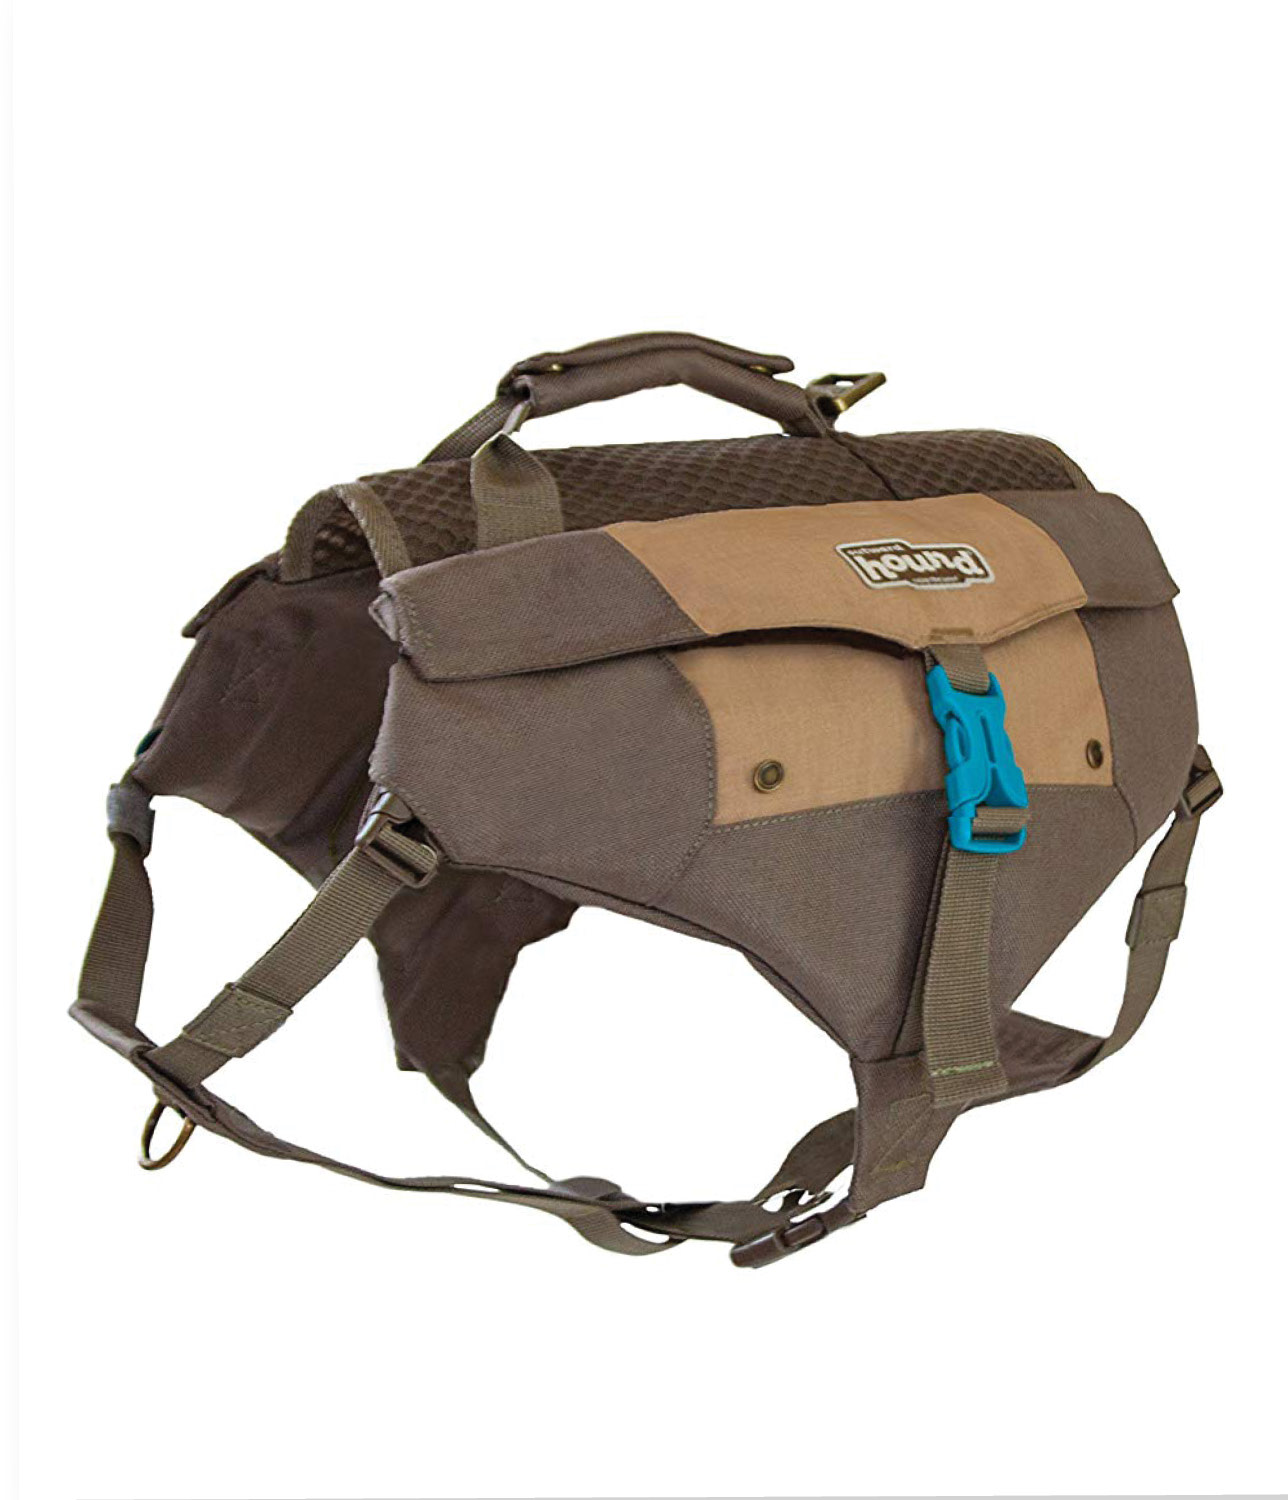 Outward Hound Daypack Dog Backpack